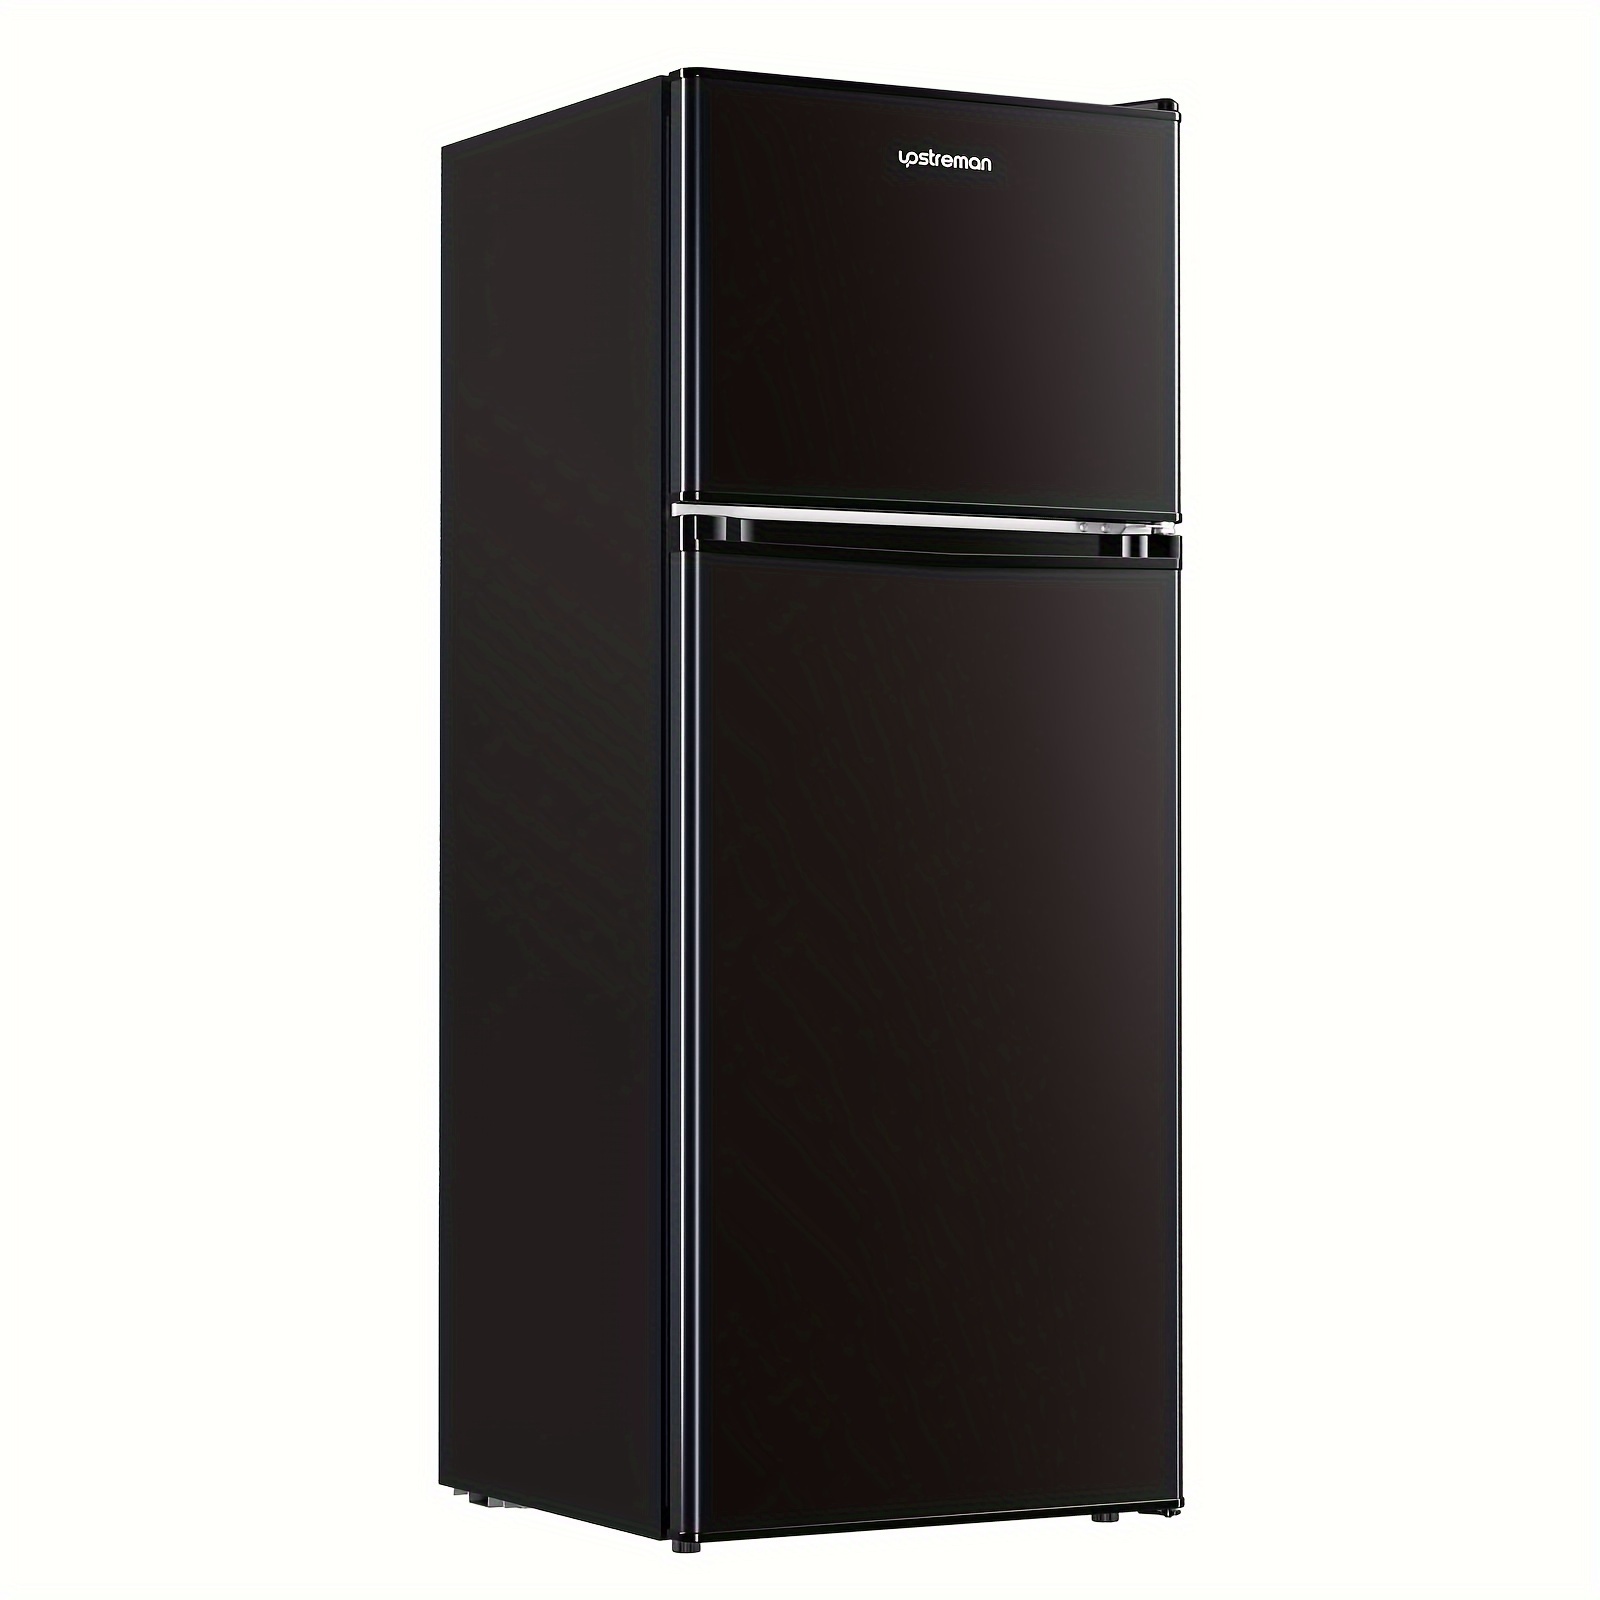 

Upstreman-br401-4.0cu.ft. Black Double Door Refrigerator